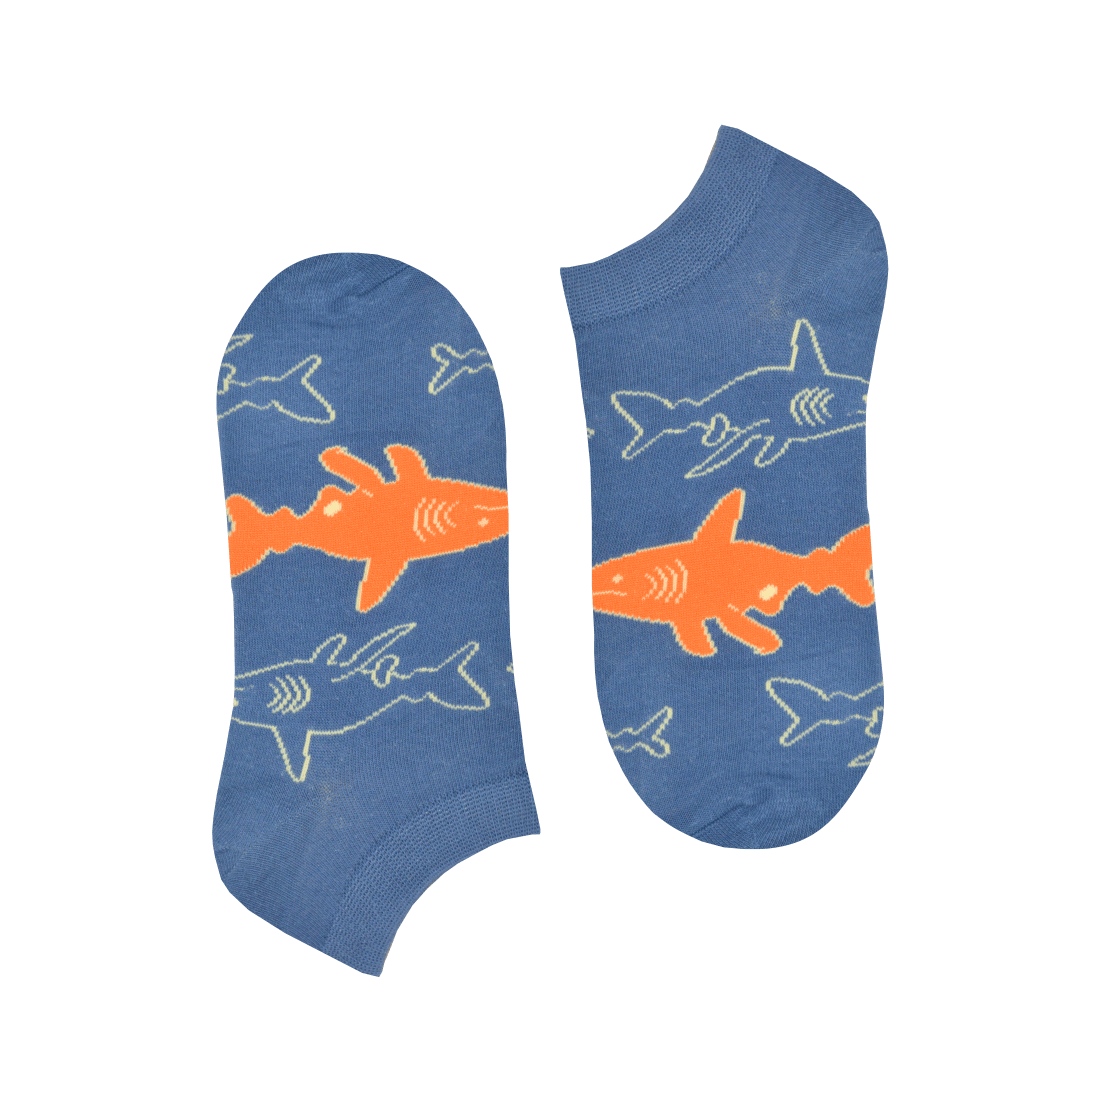 Medias Locas invisibles calcetines baletas divertidos de diseño de tiburon Freaky Socks